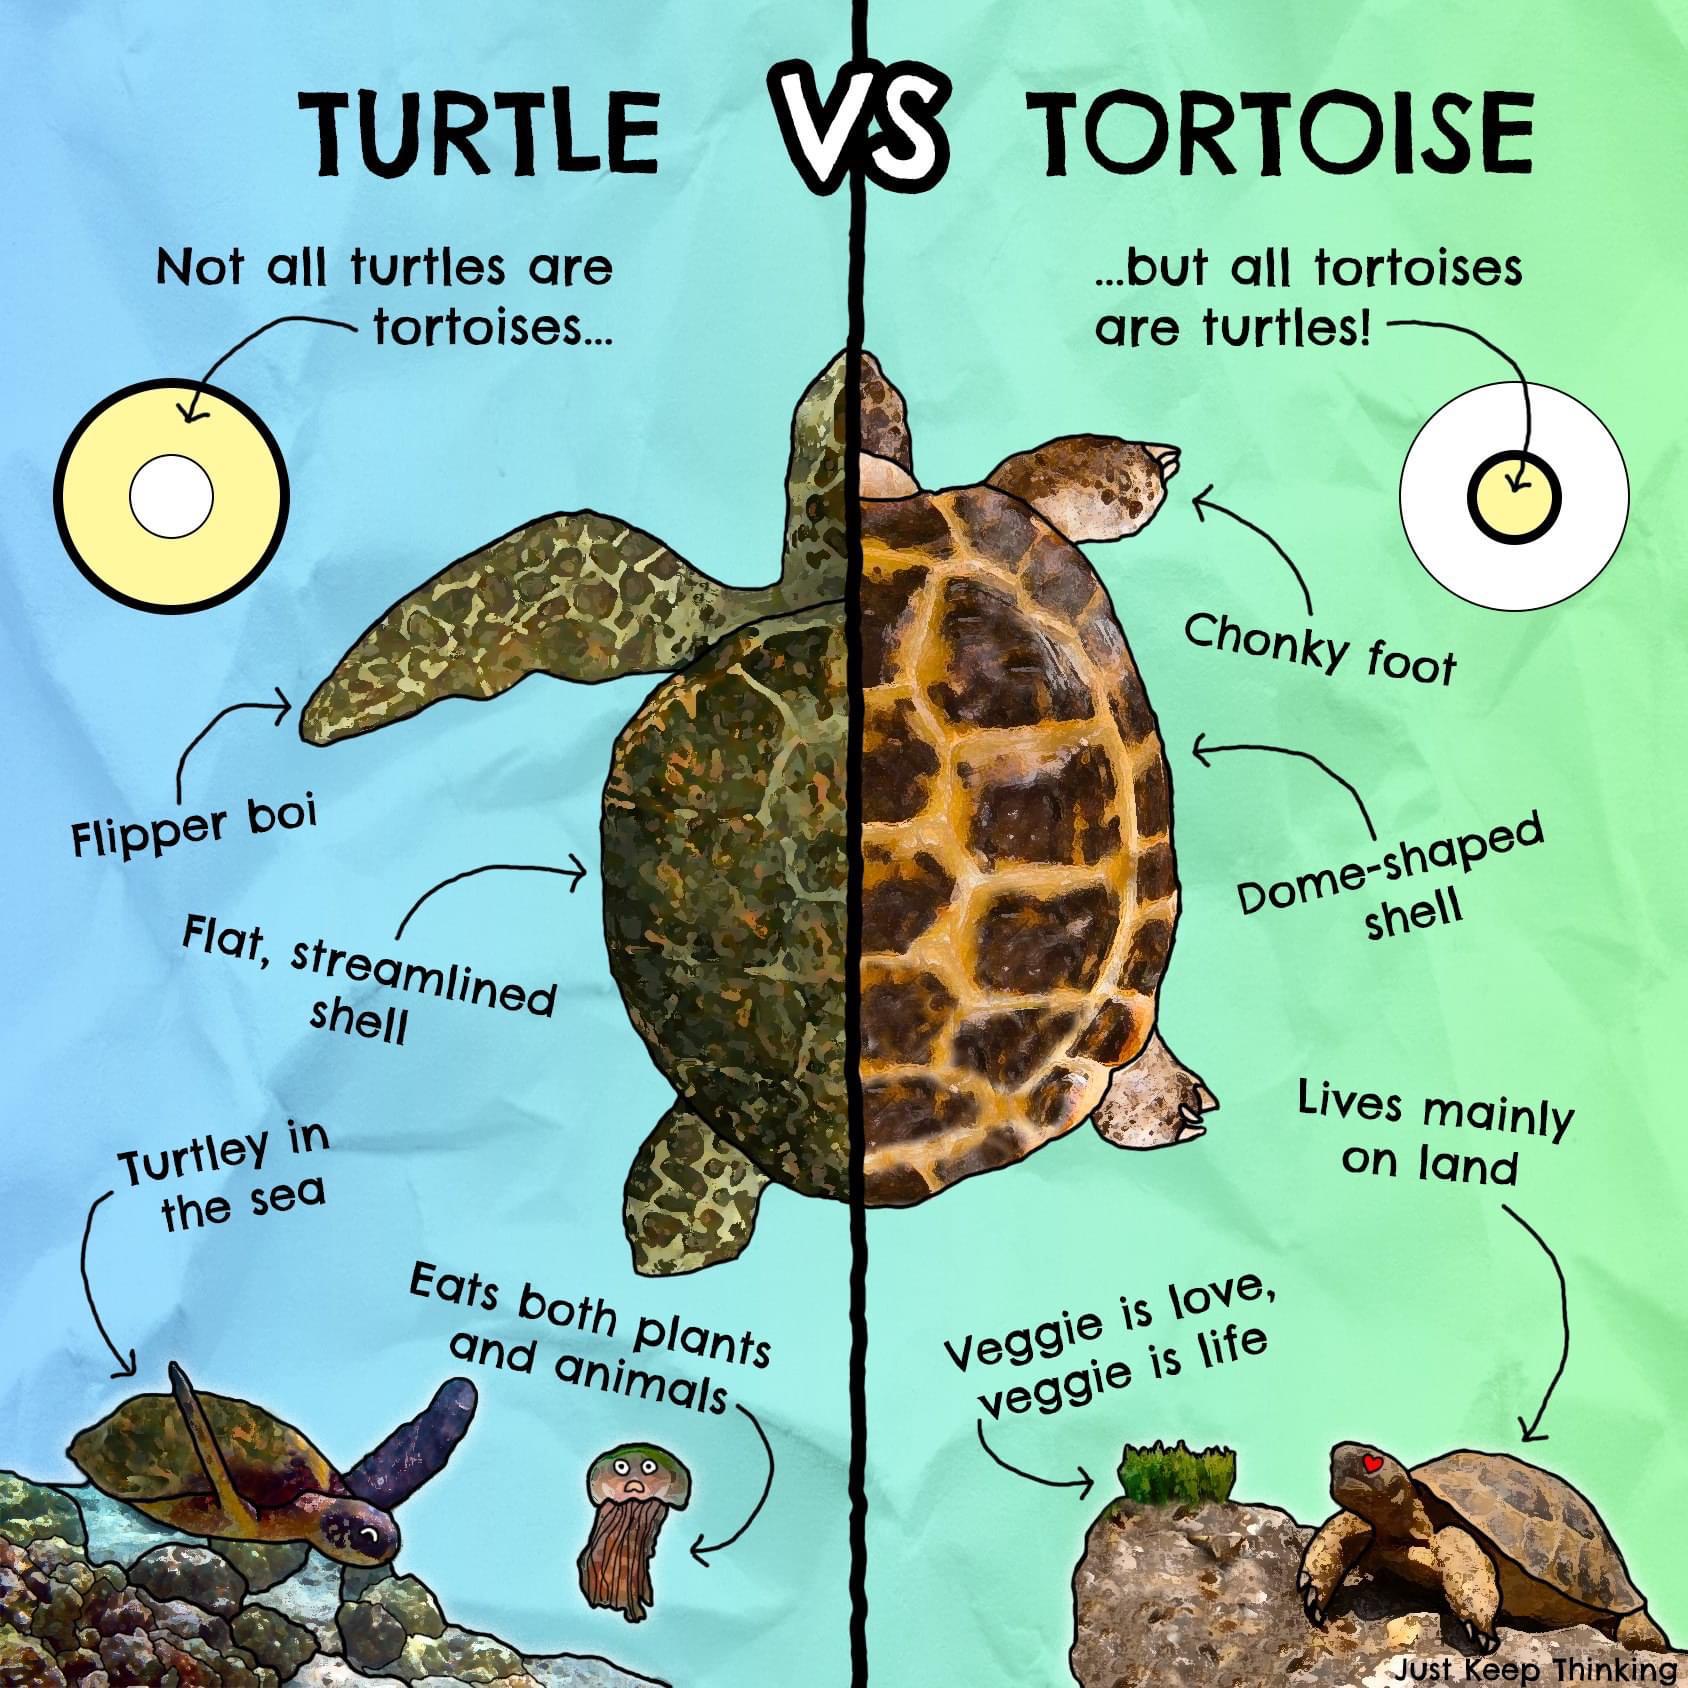 Are All Tortoises Turtles